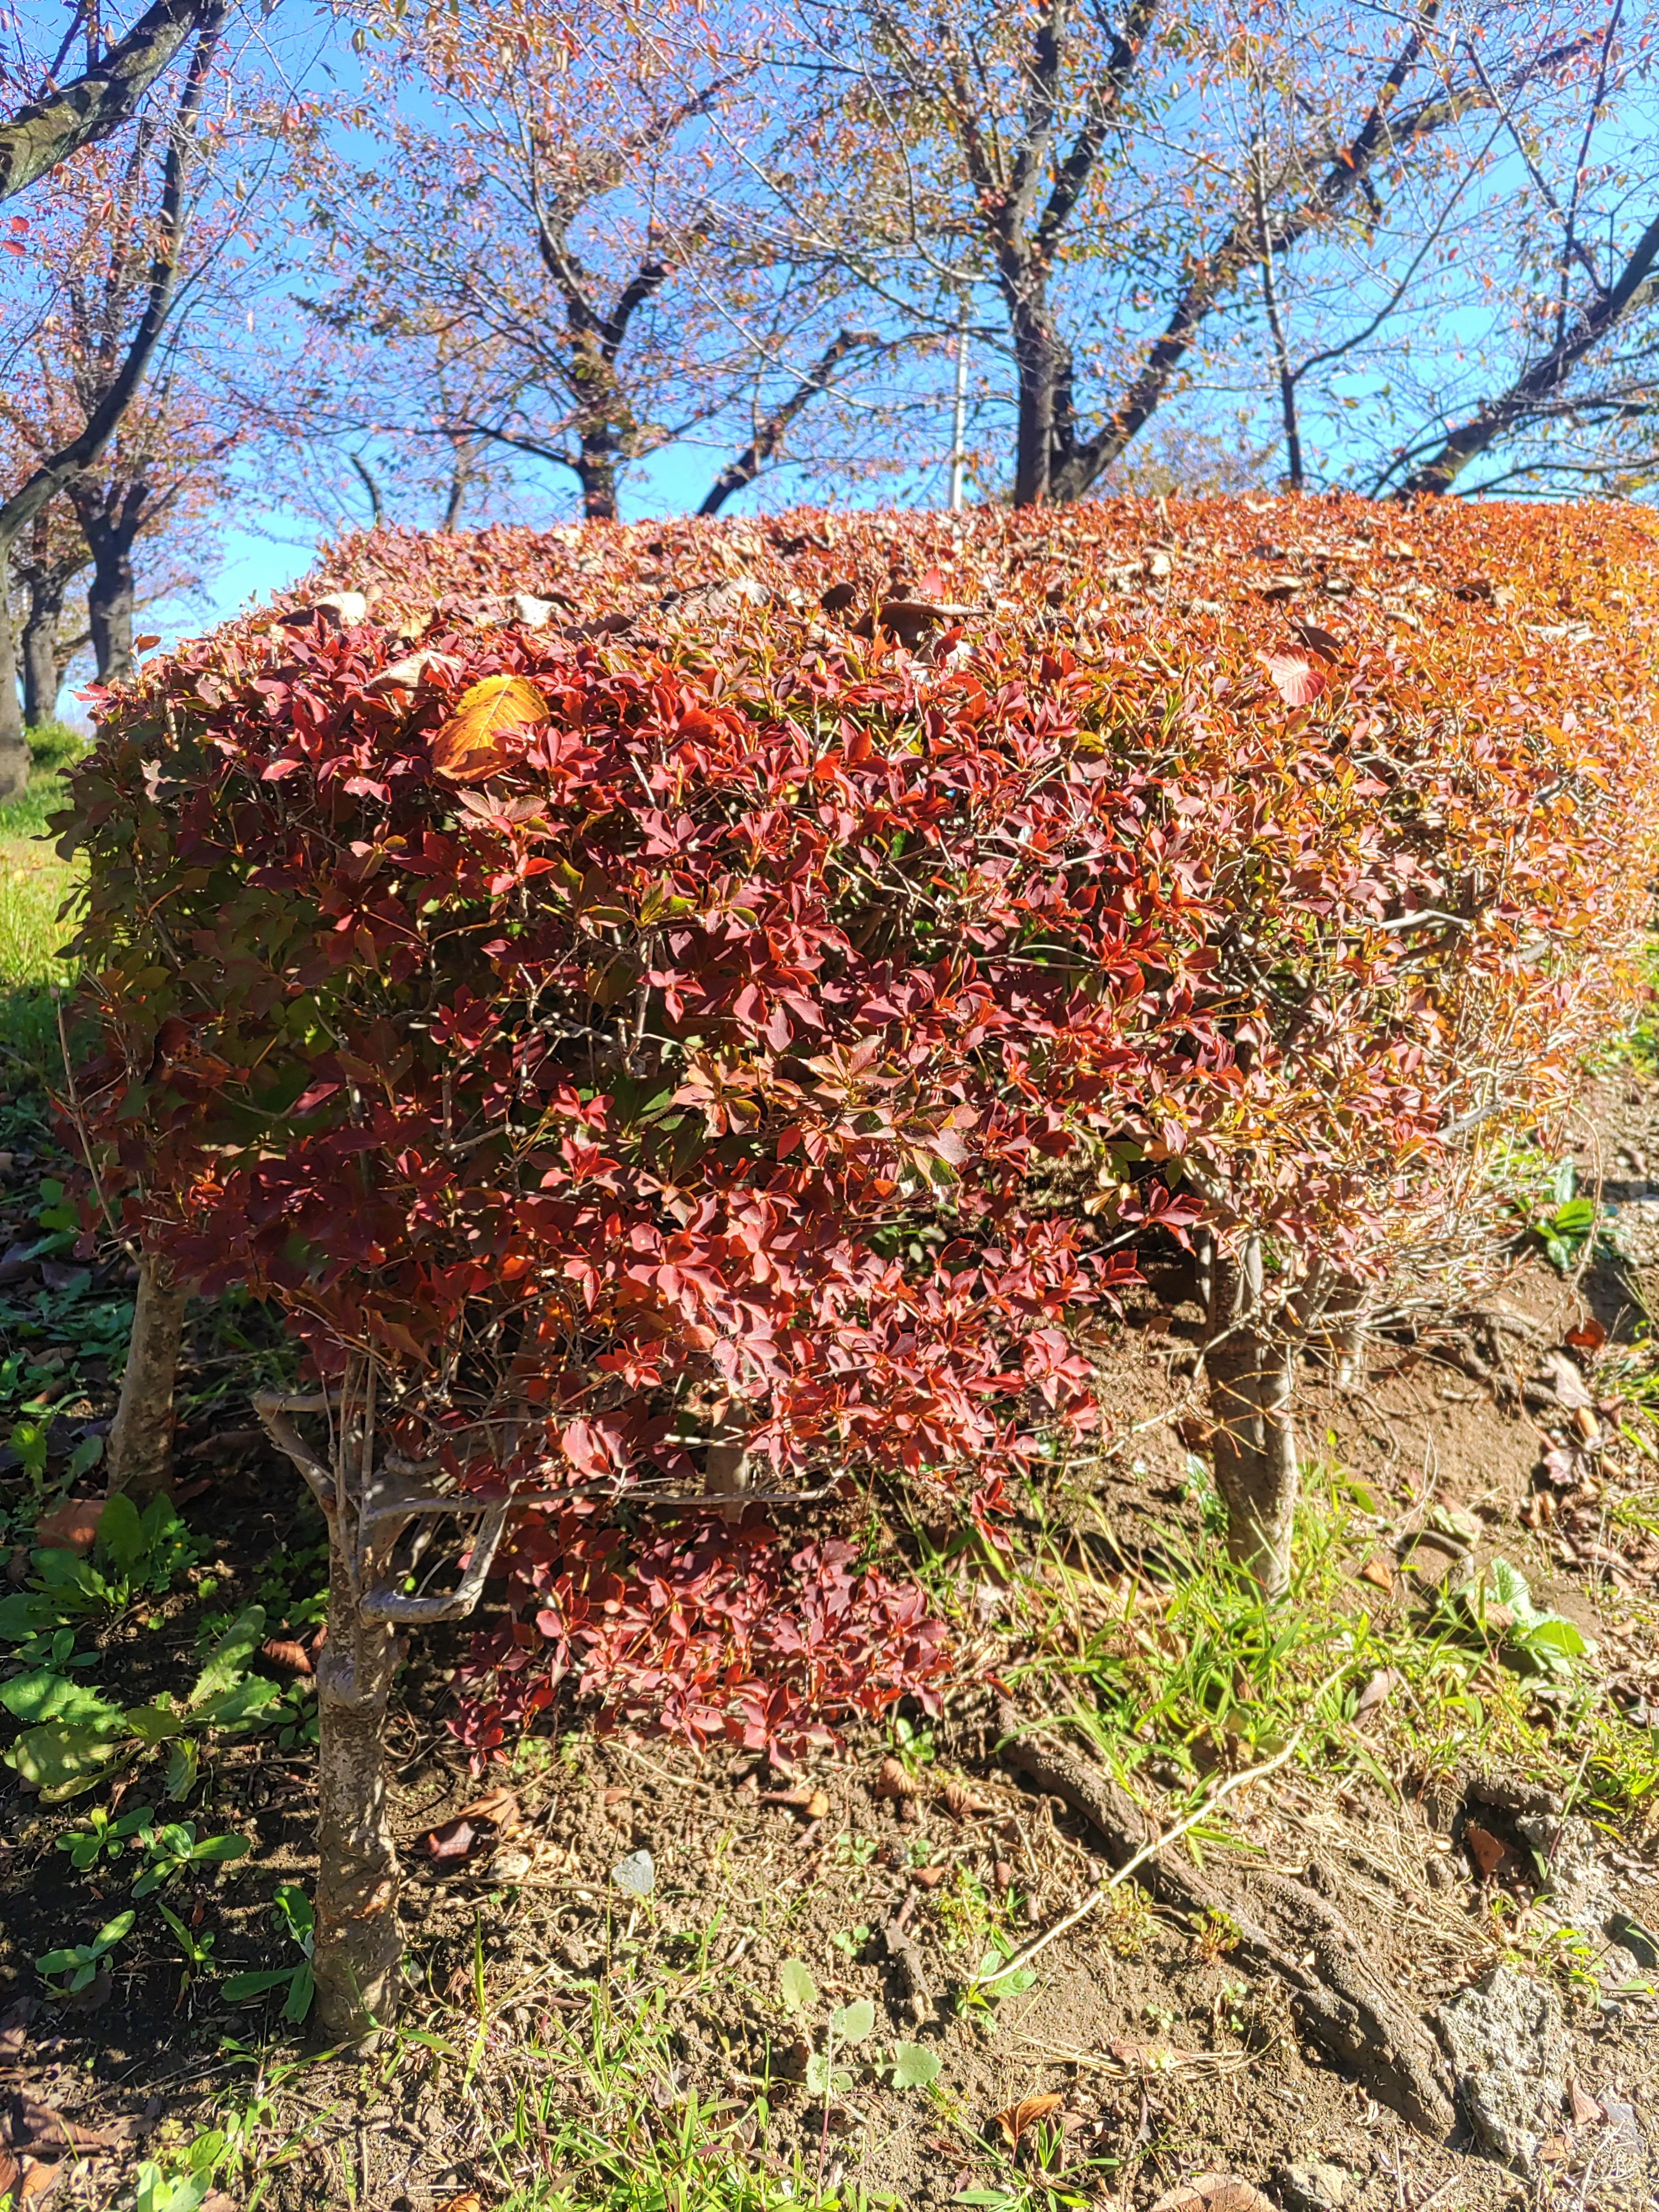 台東区公園課 Taito Park 11月とは思えないほど 暖かい日が続いていますが 樹木は少しずつ紅葉し始めました 高木も 低木も紅葉し始め 季節の移ろいを感じます ぜひ お近くの公園や街路樹でも紅葉している樹がないか探してみてください 紅葉